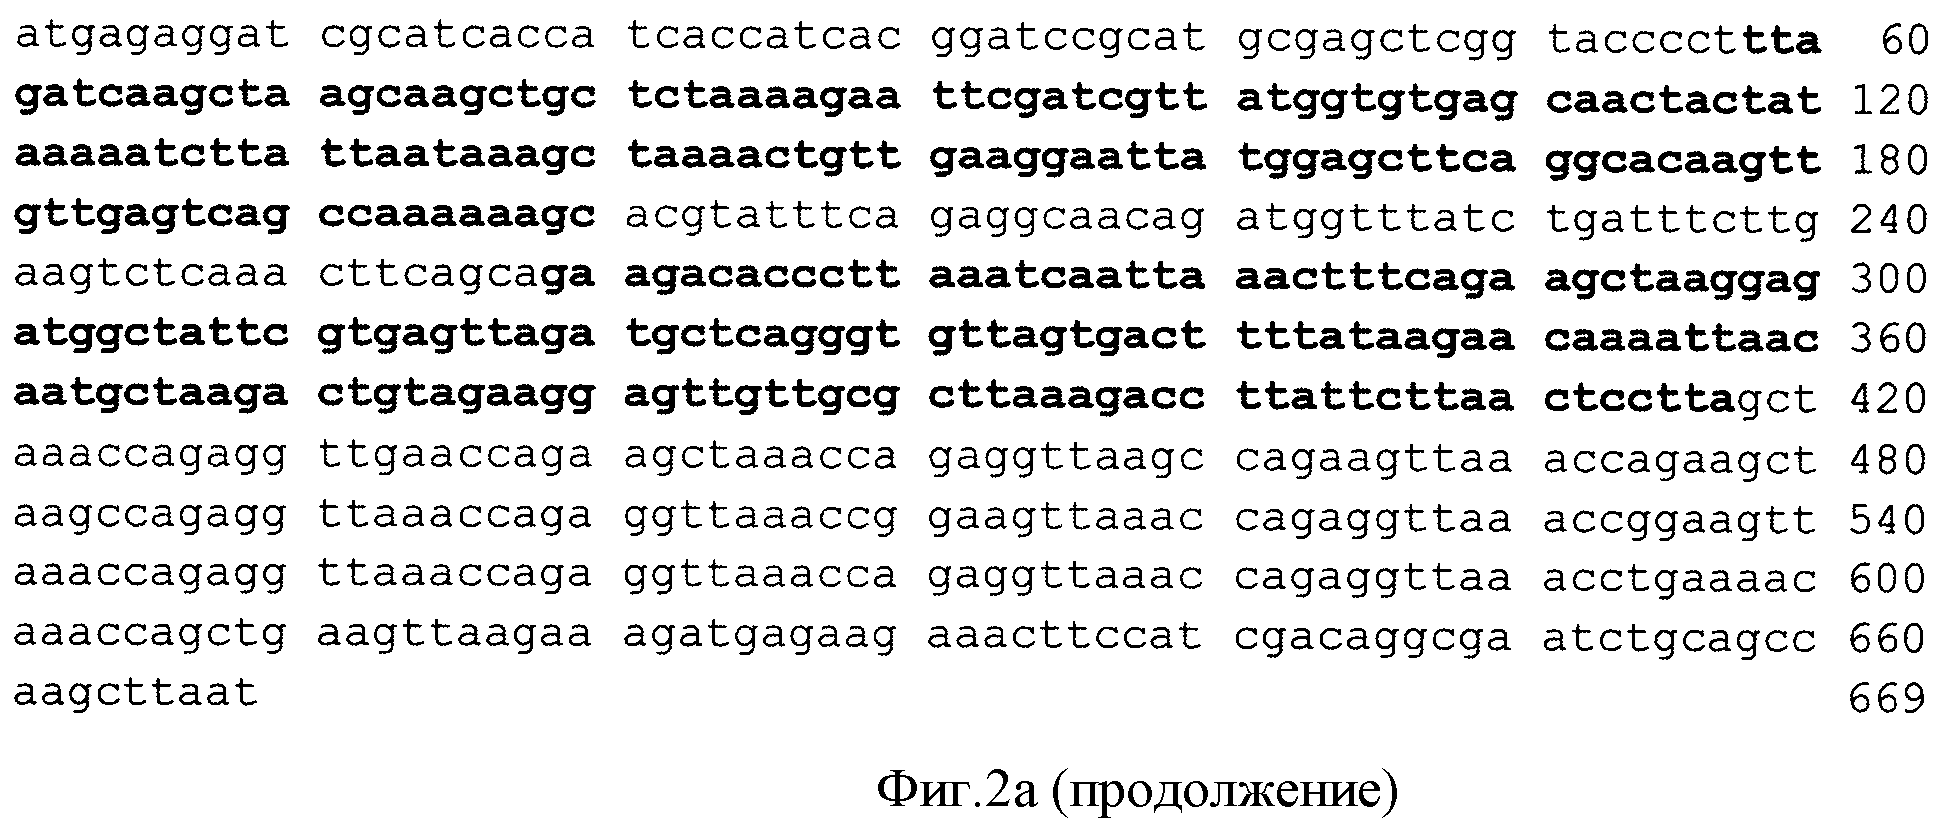 РЕКОМБИНАНТНАЯ ДНК pA4, РЕКОМБИНАНТНАЯ ДНК pQE 30-pA4, ОБЕСПЕЧИВАЮЩИЕ ПОЛУЧЕНИЕ ПОЛИПЕПТИДА A4, ШТАММ Esherichia coli M 15-A4, ТРАНСФОРМИРОВАННЫЙ РЕКОМБИНАНТНОЙ ПЛАЗМИДНОЙ ДНК pQE 30-pA4 И ЭКСПРЕССИРУЮЩИЙ РЕКОМБИНАНТНЫЙ ПОЛИПЕПТИД A4, РЕКОМБИНАНТНЫЙ ПОЛИПЕПТИД A4, ОБЛАДАЮЩИЙ СПОСОБНОСТЬЮ СЕЛЕКТИВНО СВЯЗЫВАТЬ ЧСА, АФФИННЫЕ СОРБЕНТЫ (ВАРИАНТЫ) И СПОСОБЫ УДАЛЕНИЯ ЧСА И IgG ИЗ СЫВОРОТКИ КРОВИ (ВАРИАНТЫ)